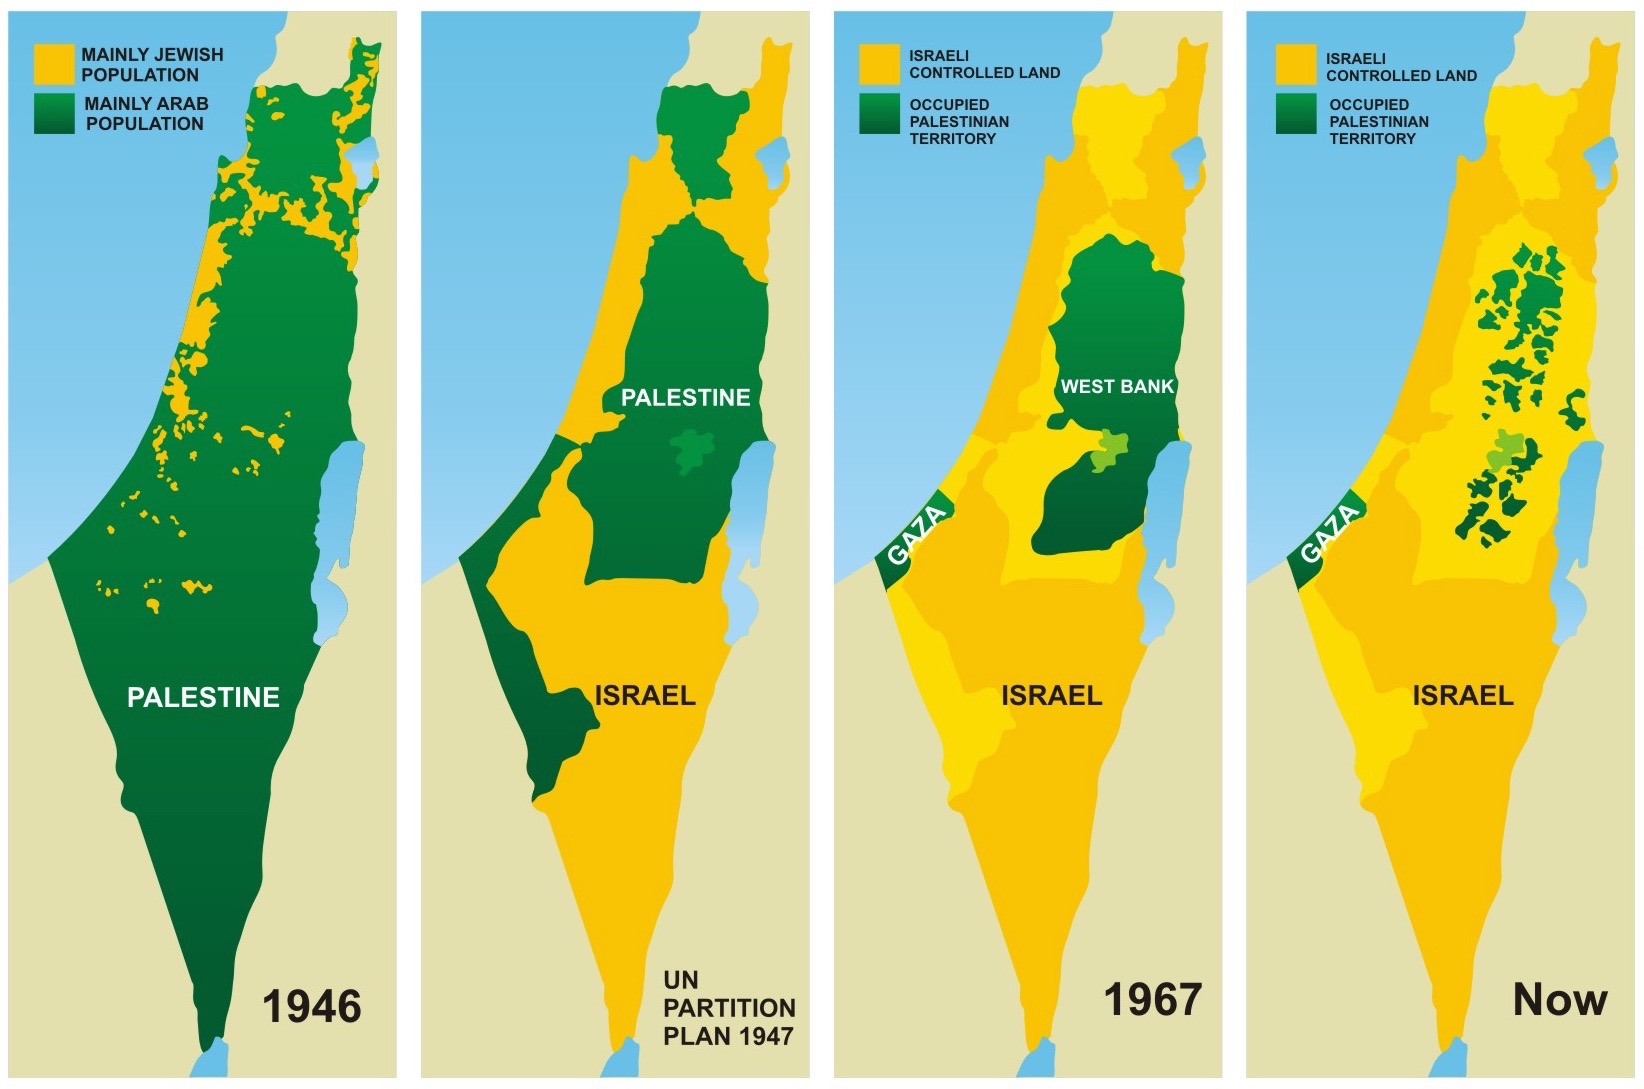 Occupied Palestine 